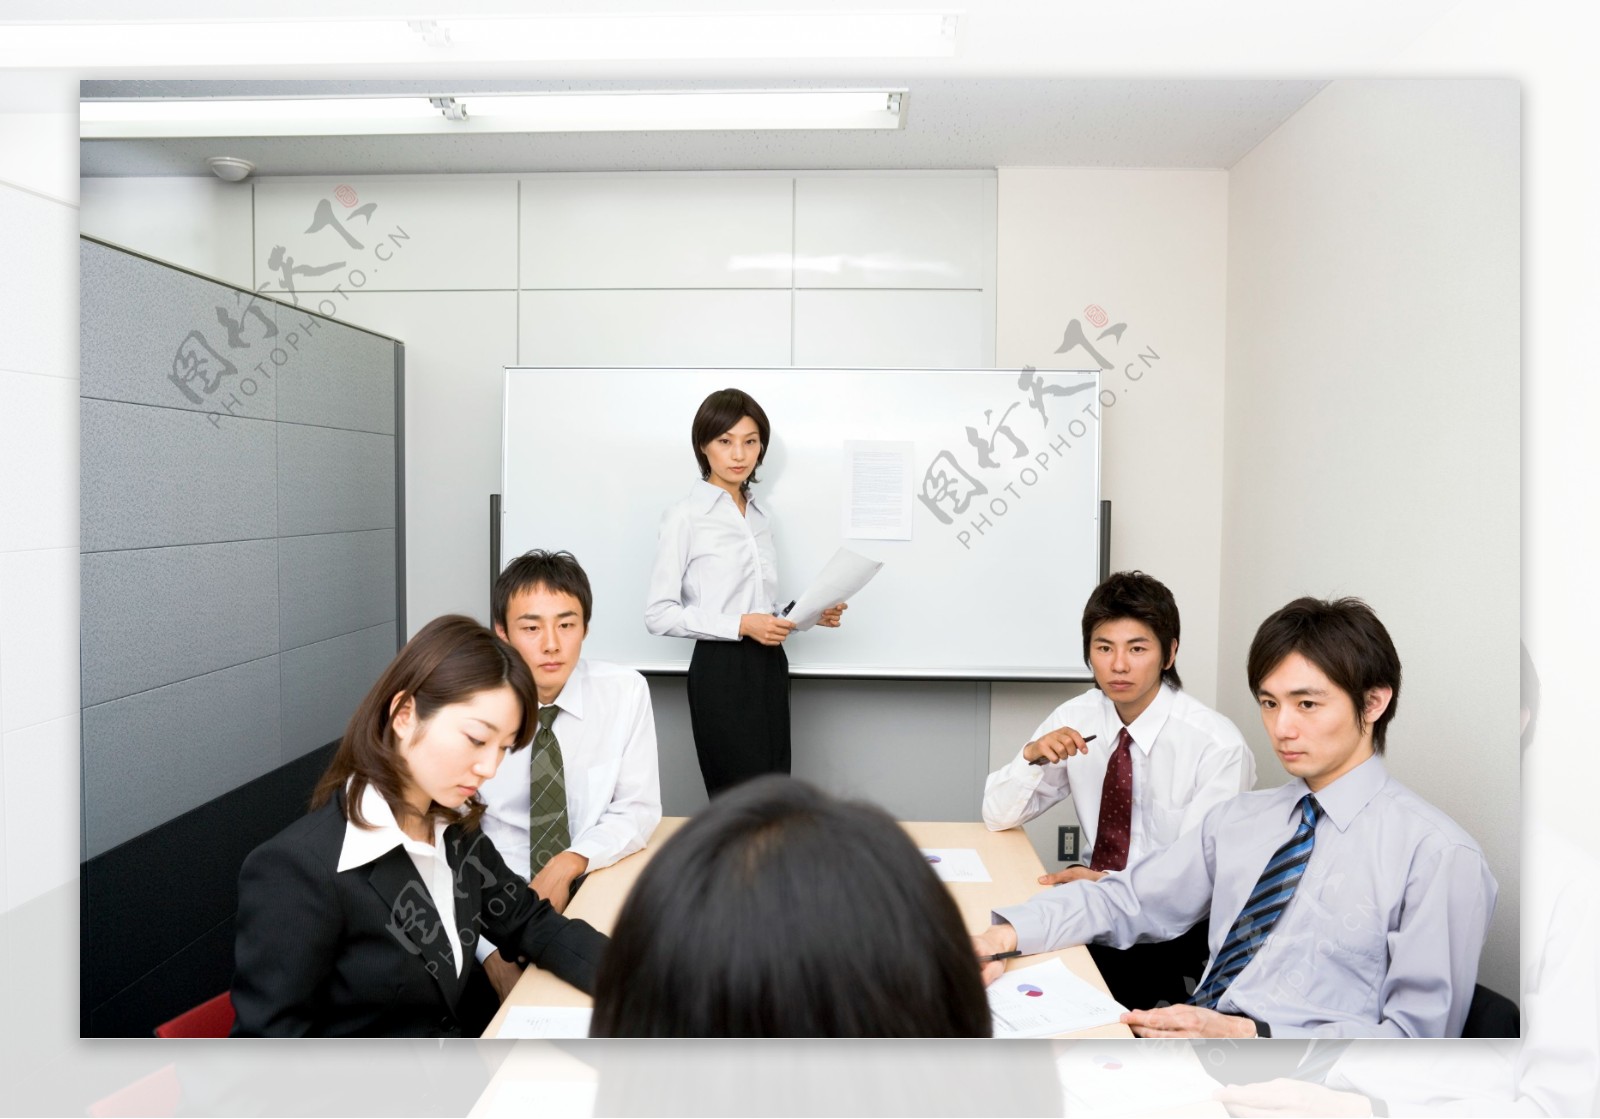 正在商讨研究会议的商务团队图片